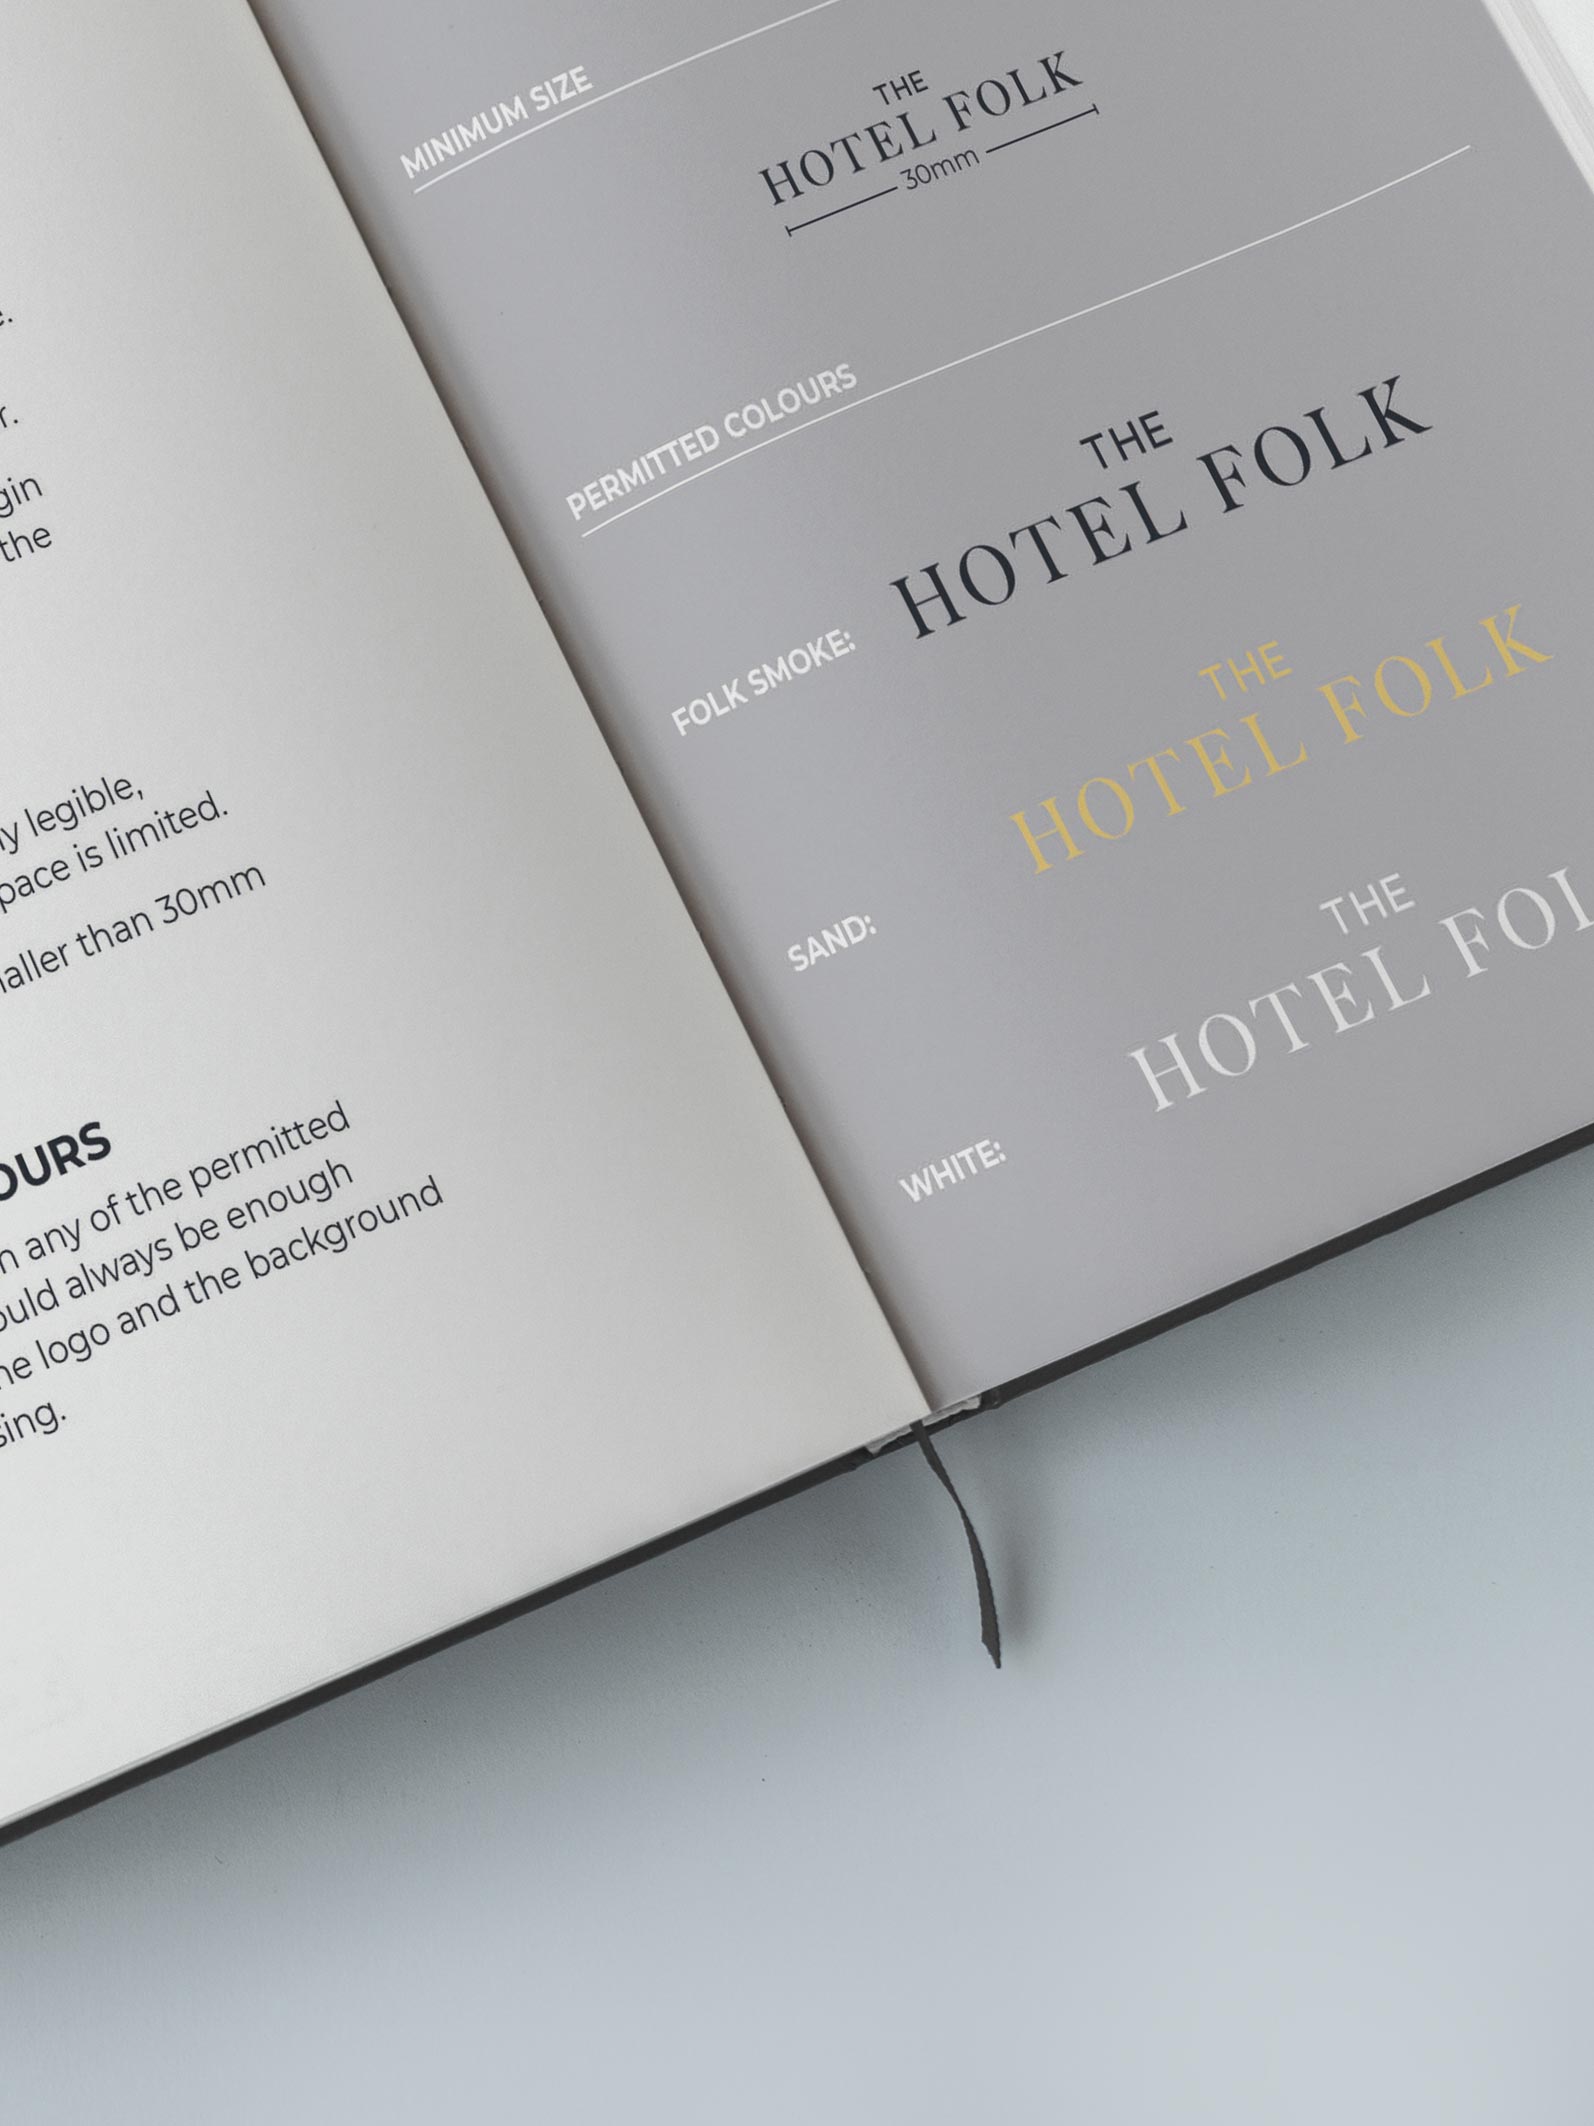 Hotel-Folk-11